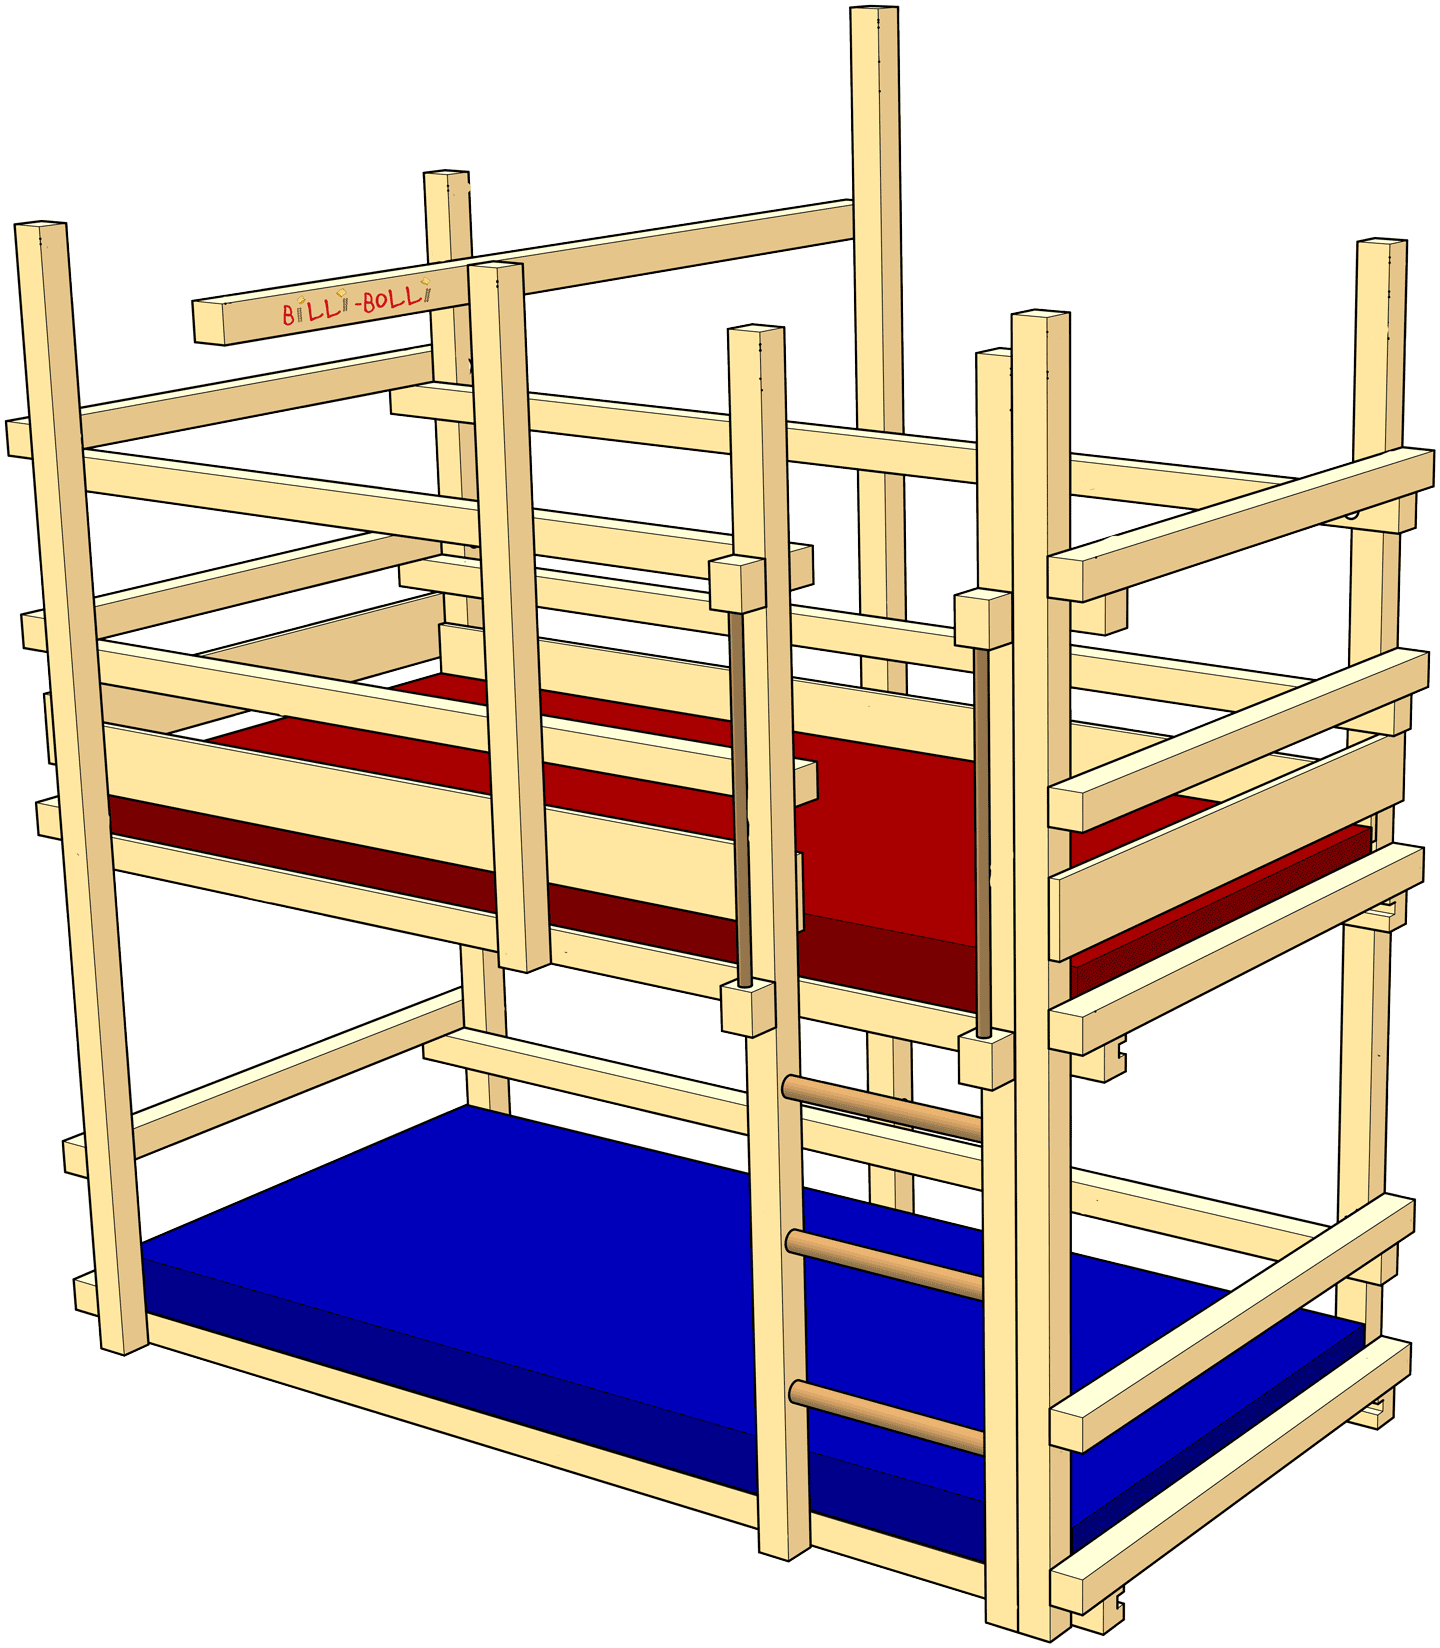 Modèles de lits superposés pour des enfants plus petits